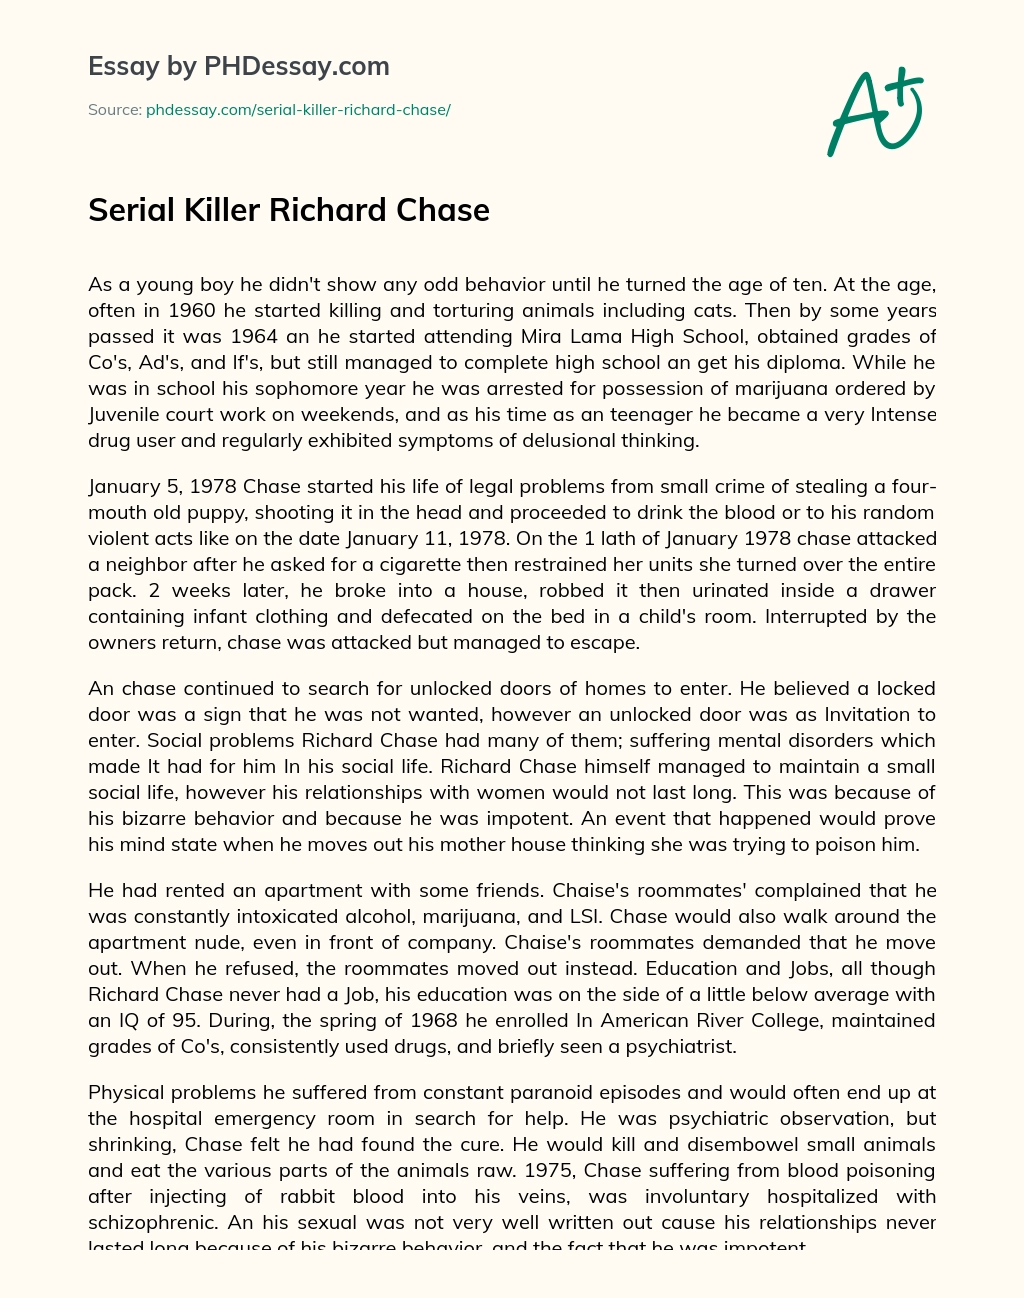 Serial Killer Richard Chase essay